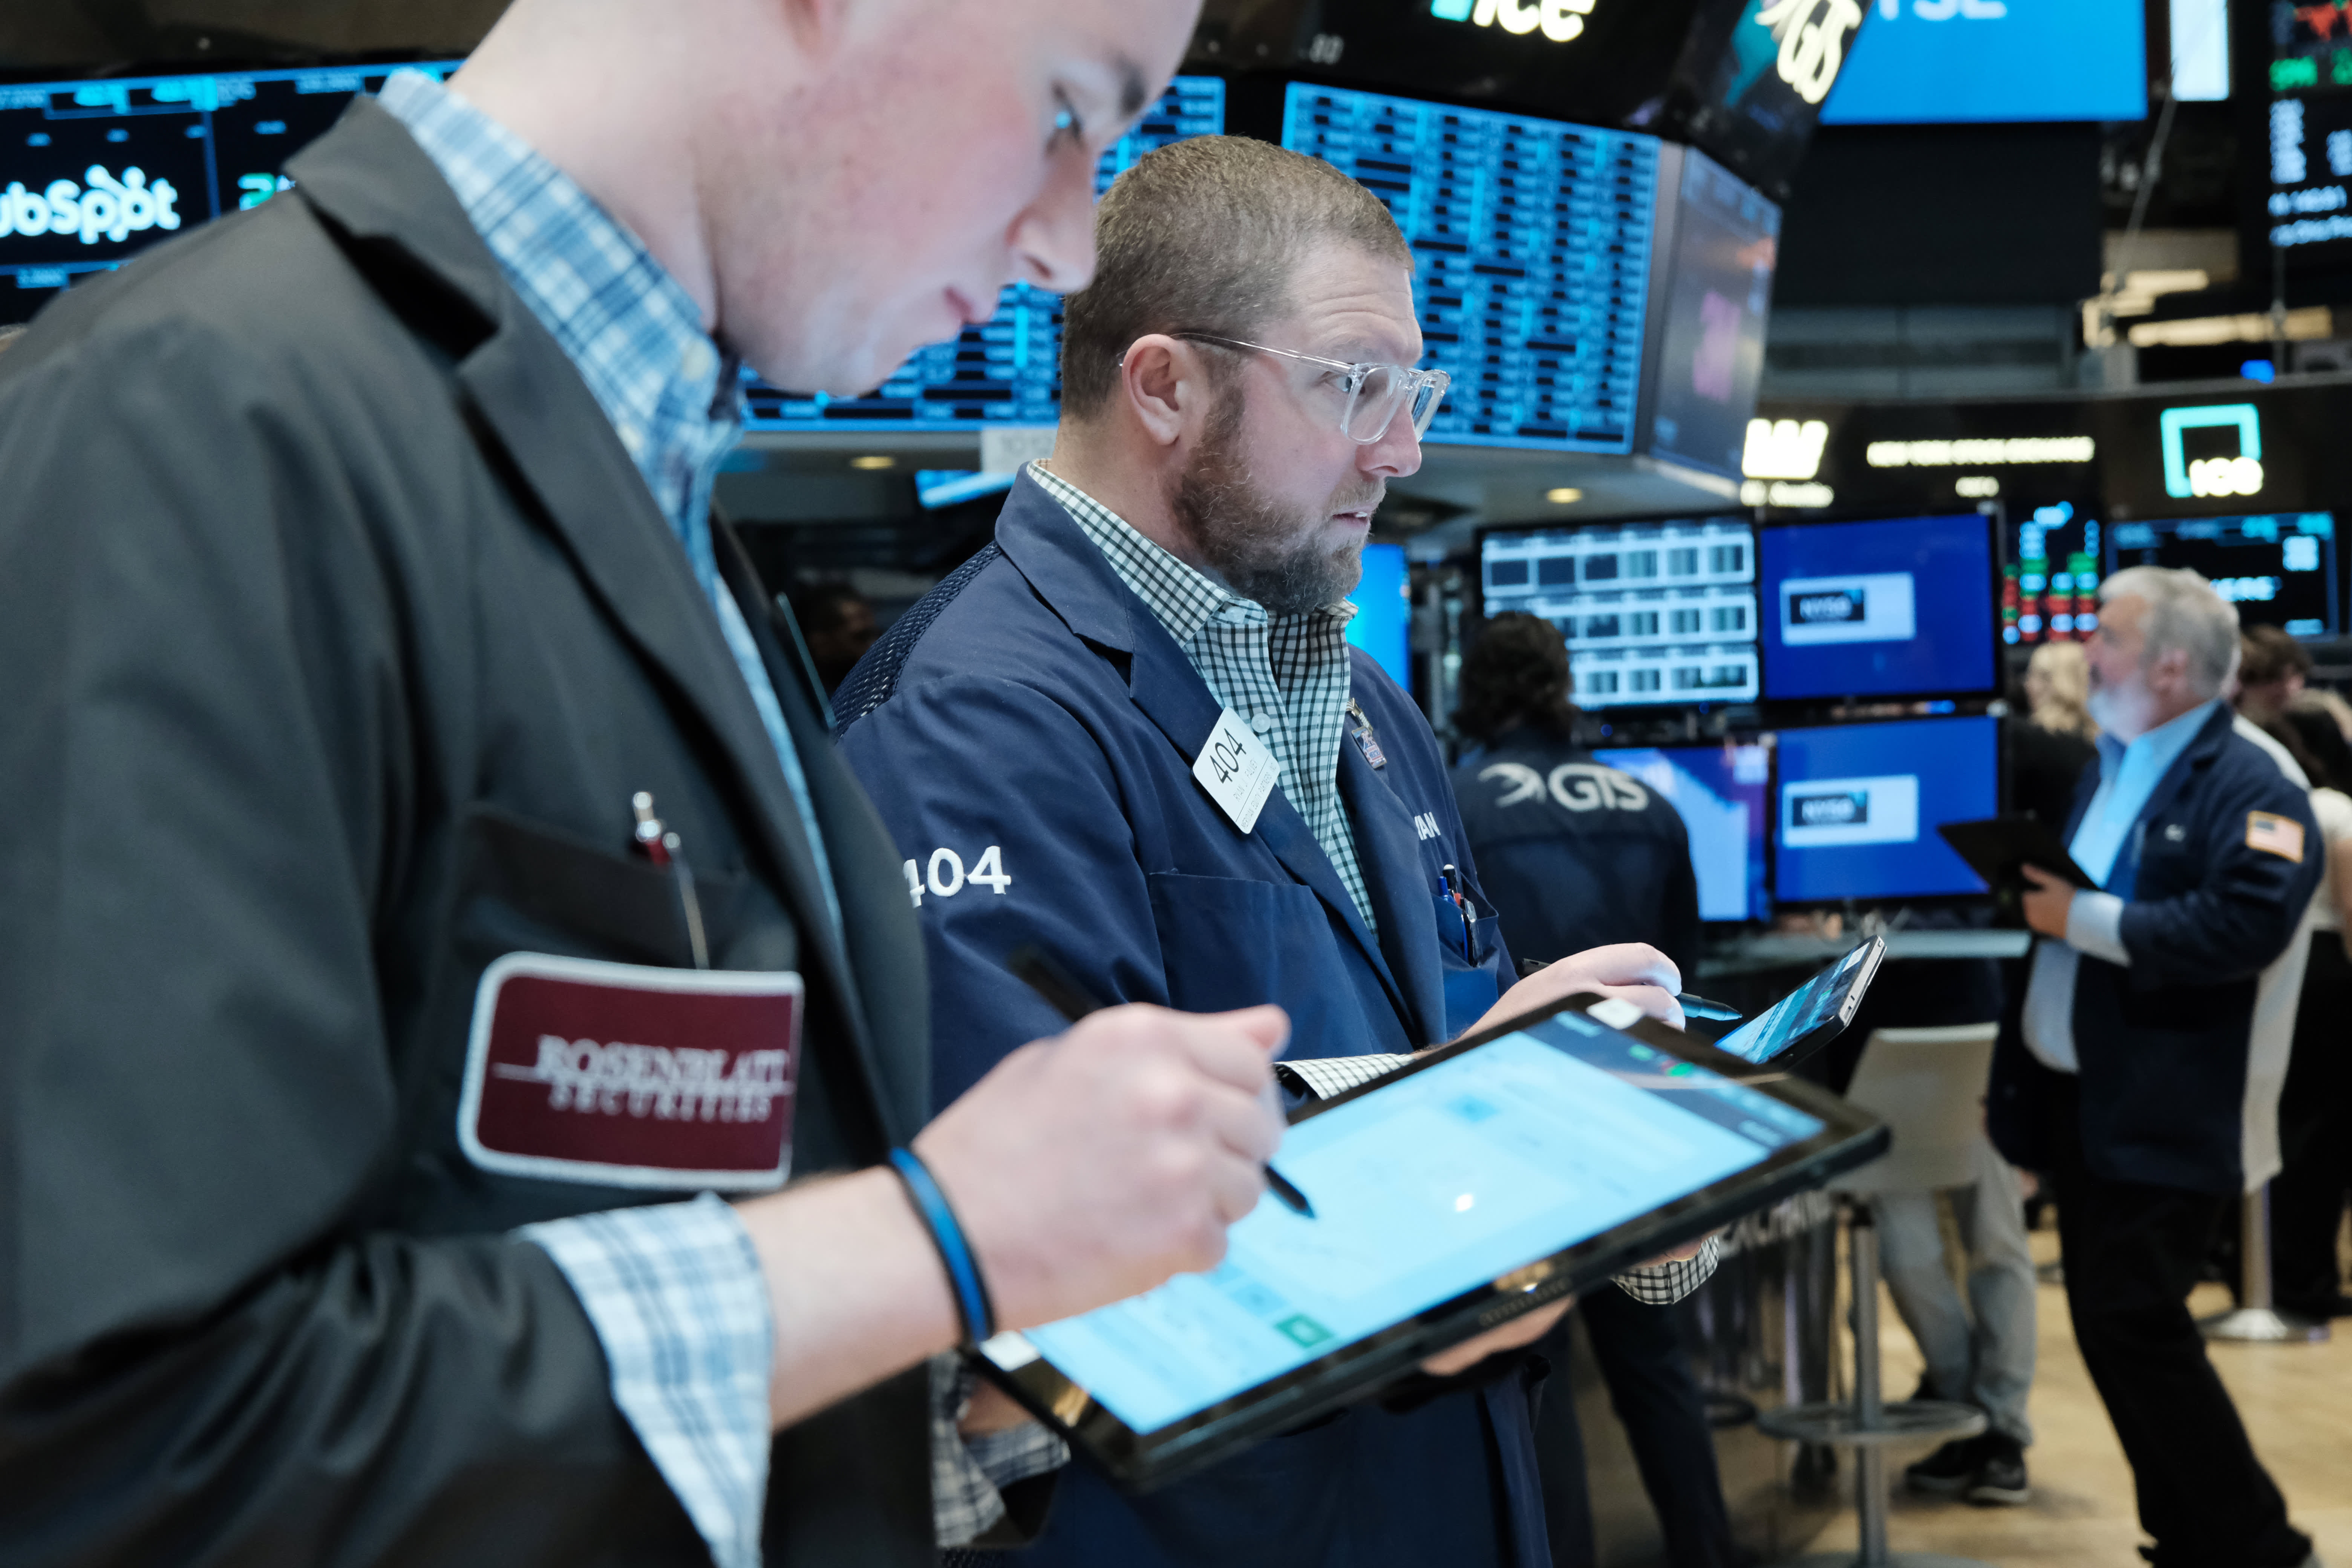 Futuros de ações caem enquanto Wall Street aguarda ganhos de tecnologia